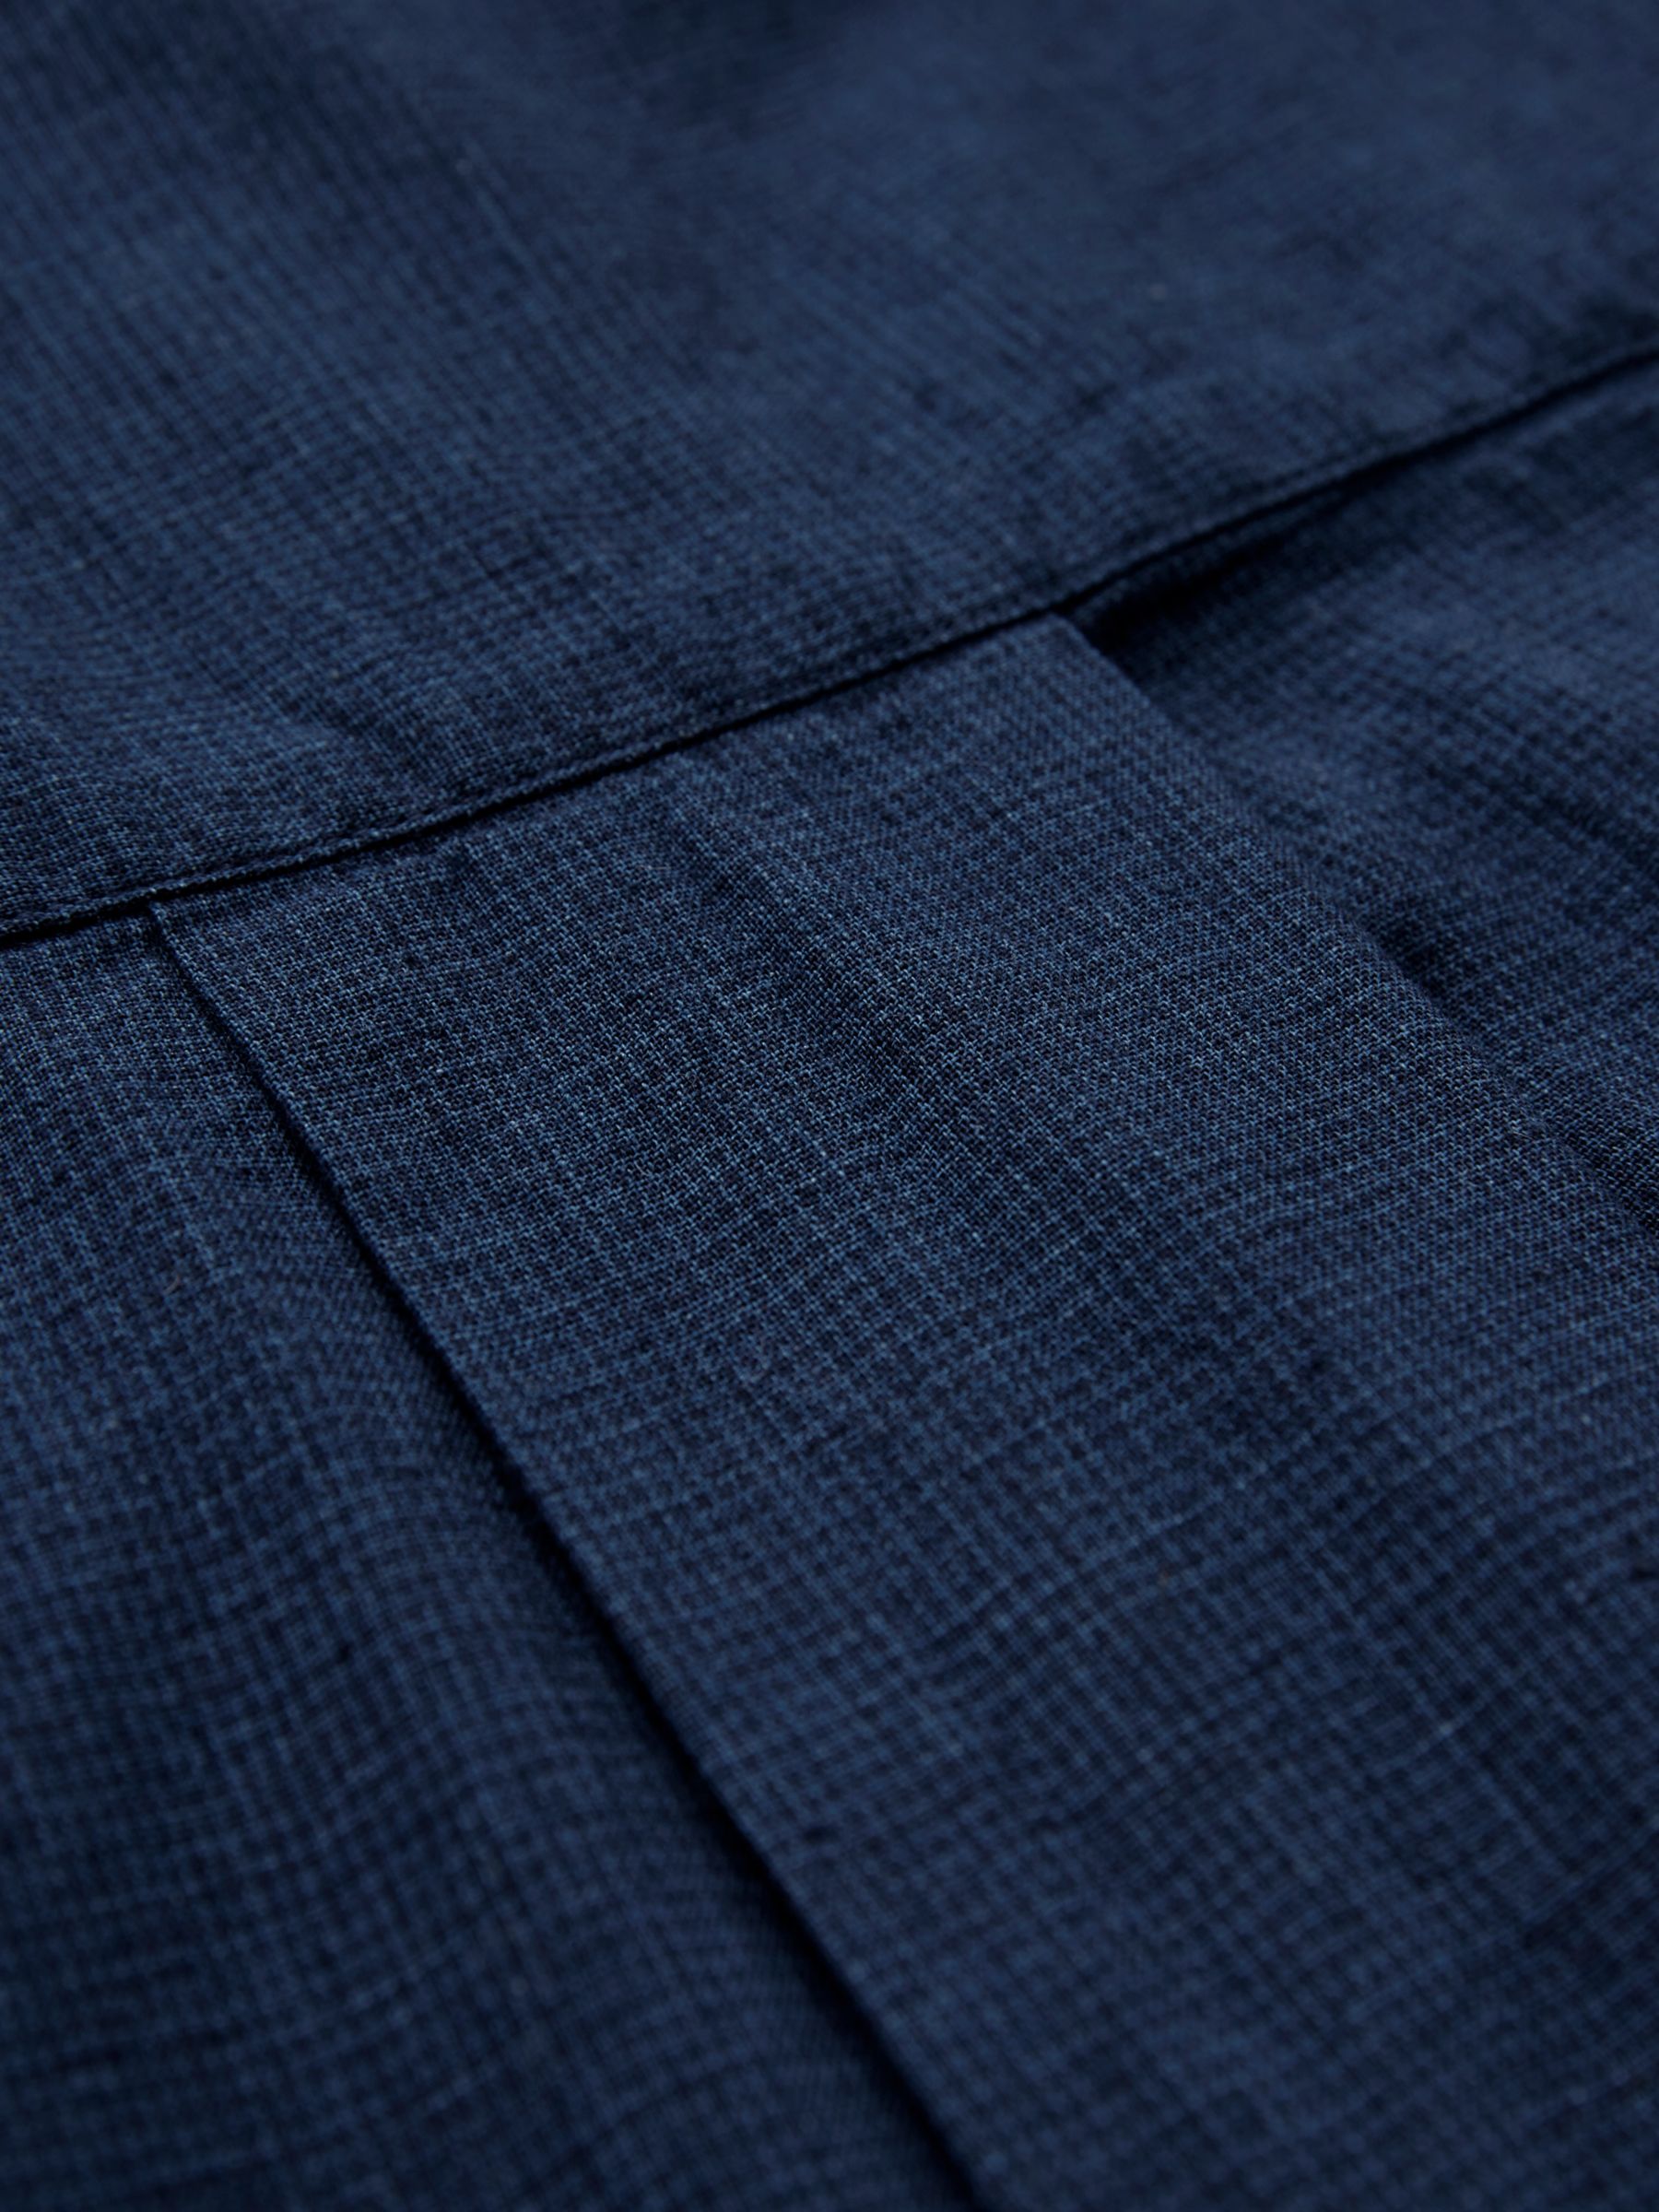 Celtic & Co. Linen/Cotton Jumpsuit